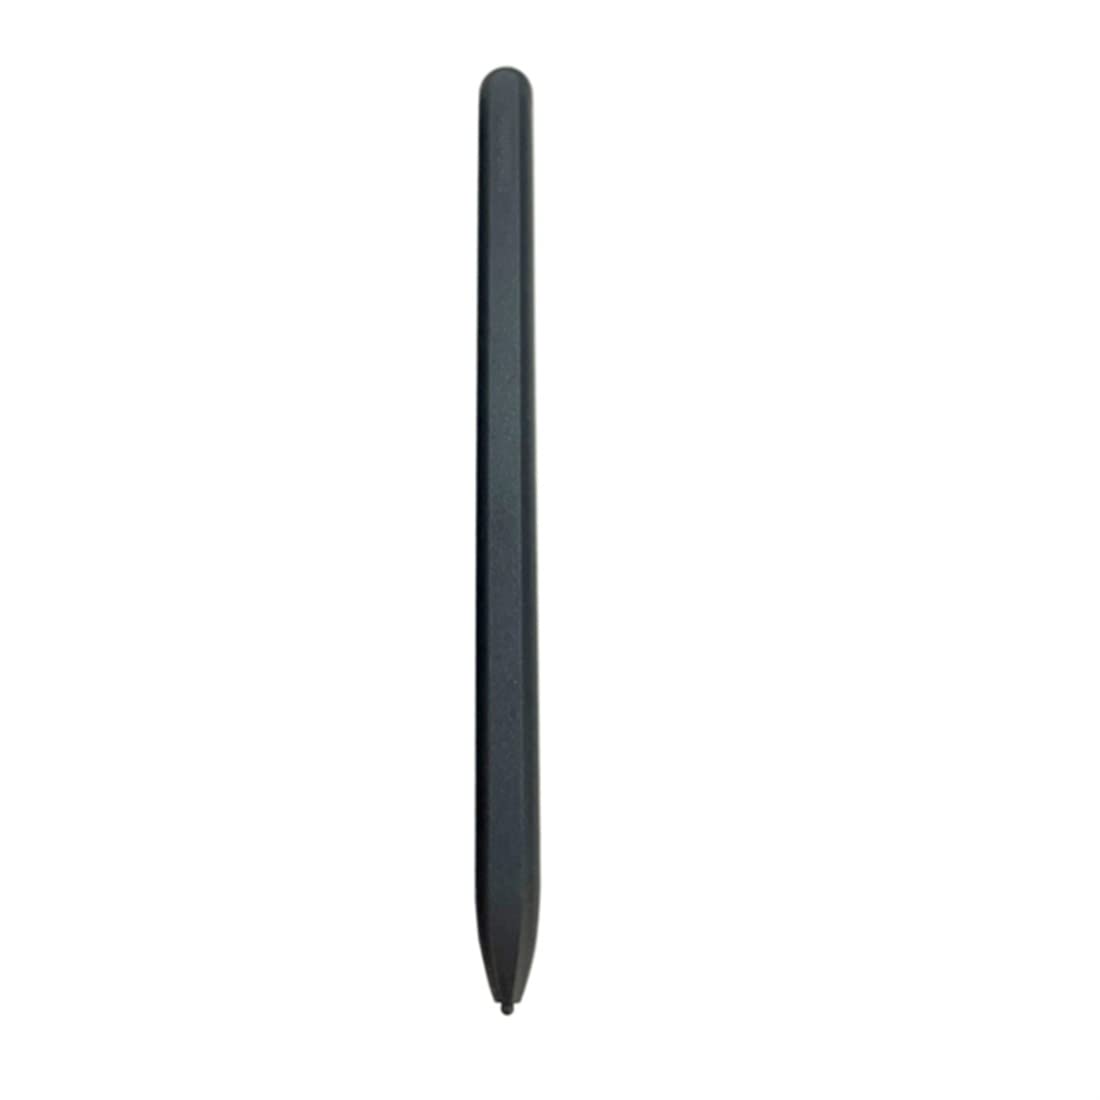 Stylus für Galaxy Z Fold 3 S Pen 2021 Neuer multifunktionaler Touch Stylus S Pen Ersatz – Schwarz